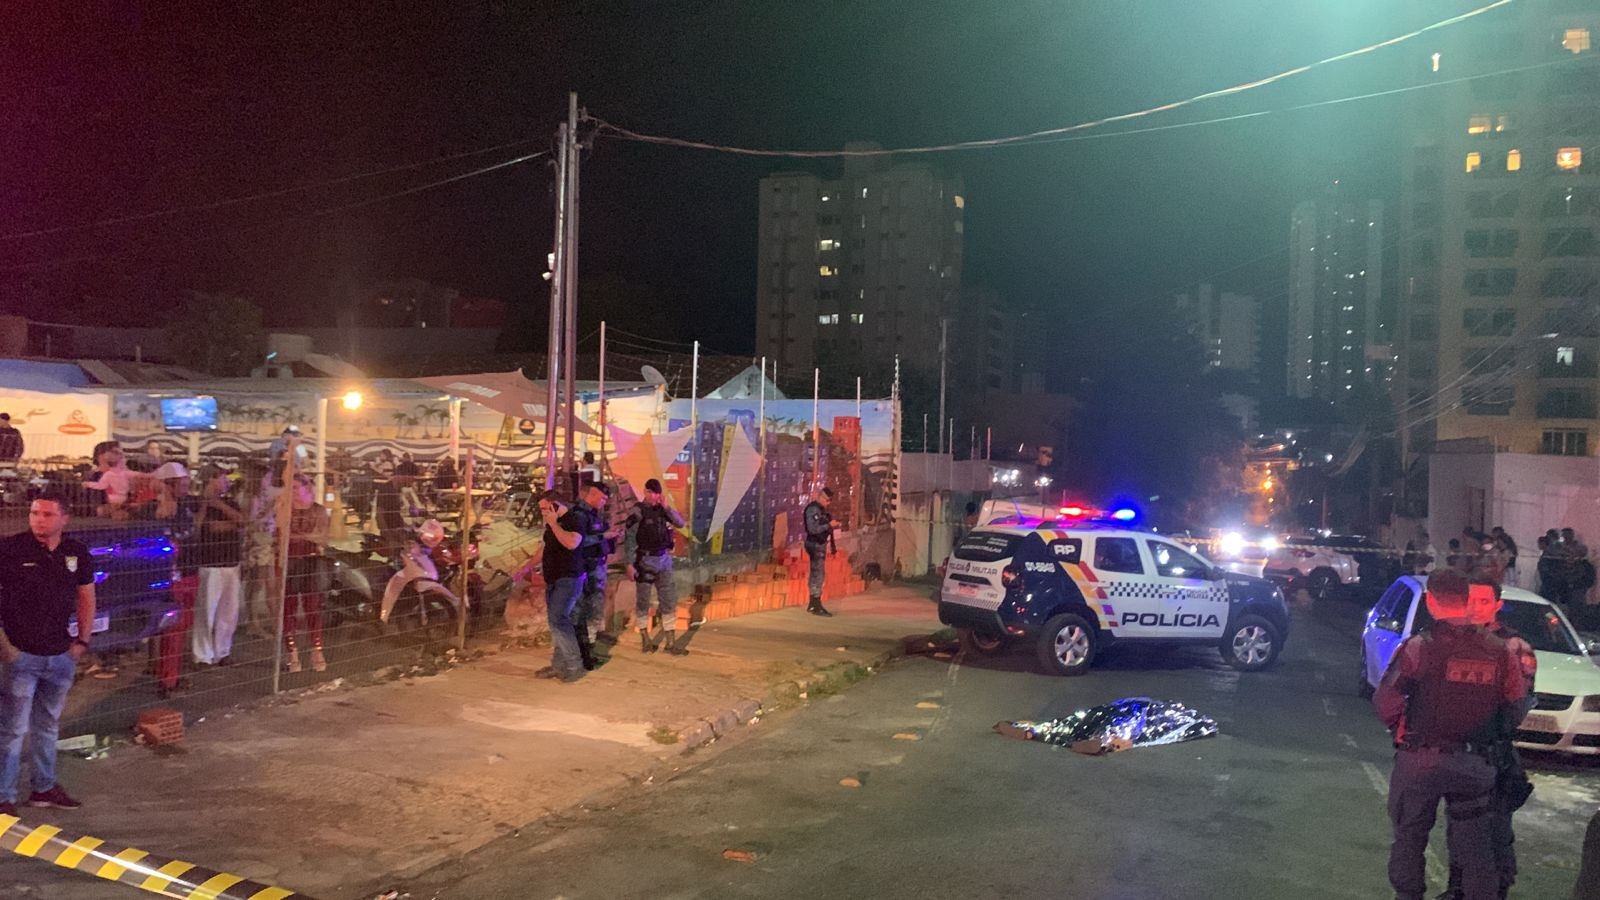 Vídeo mostra momento em que vereador de Cuiabá atira e mata agente penitenciário